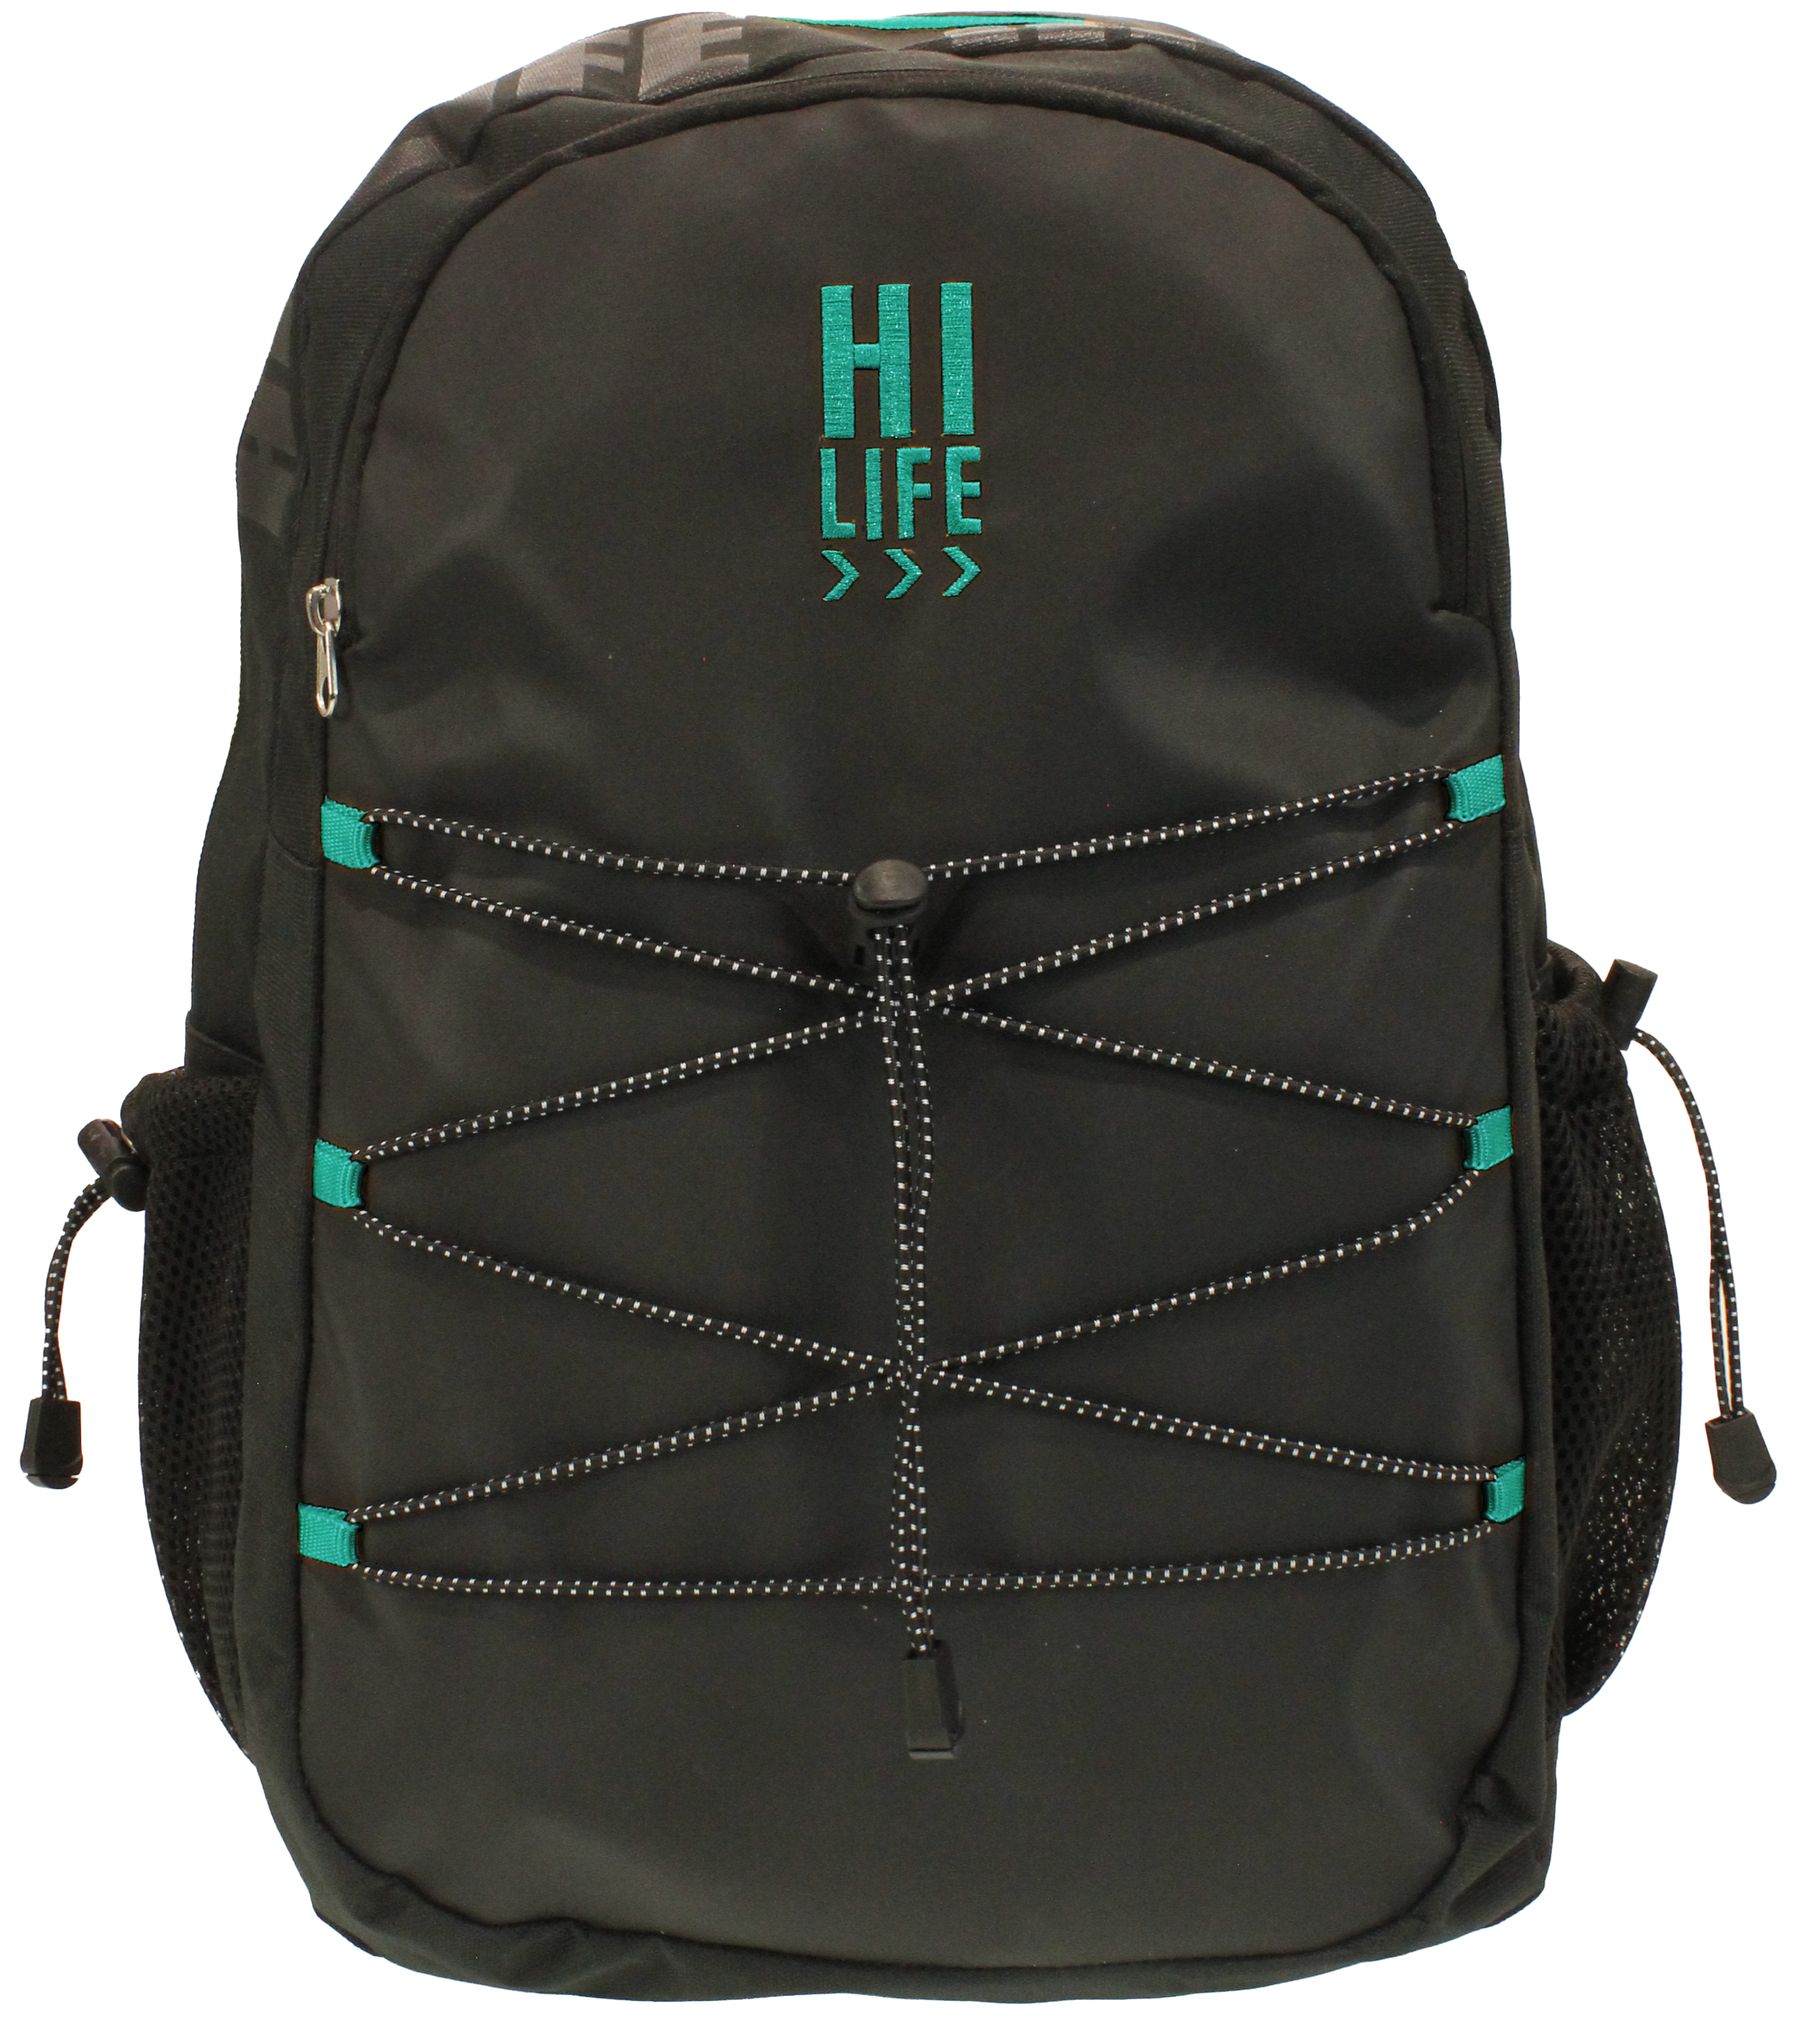 Hi-Life Student Backpack Black/Teal